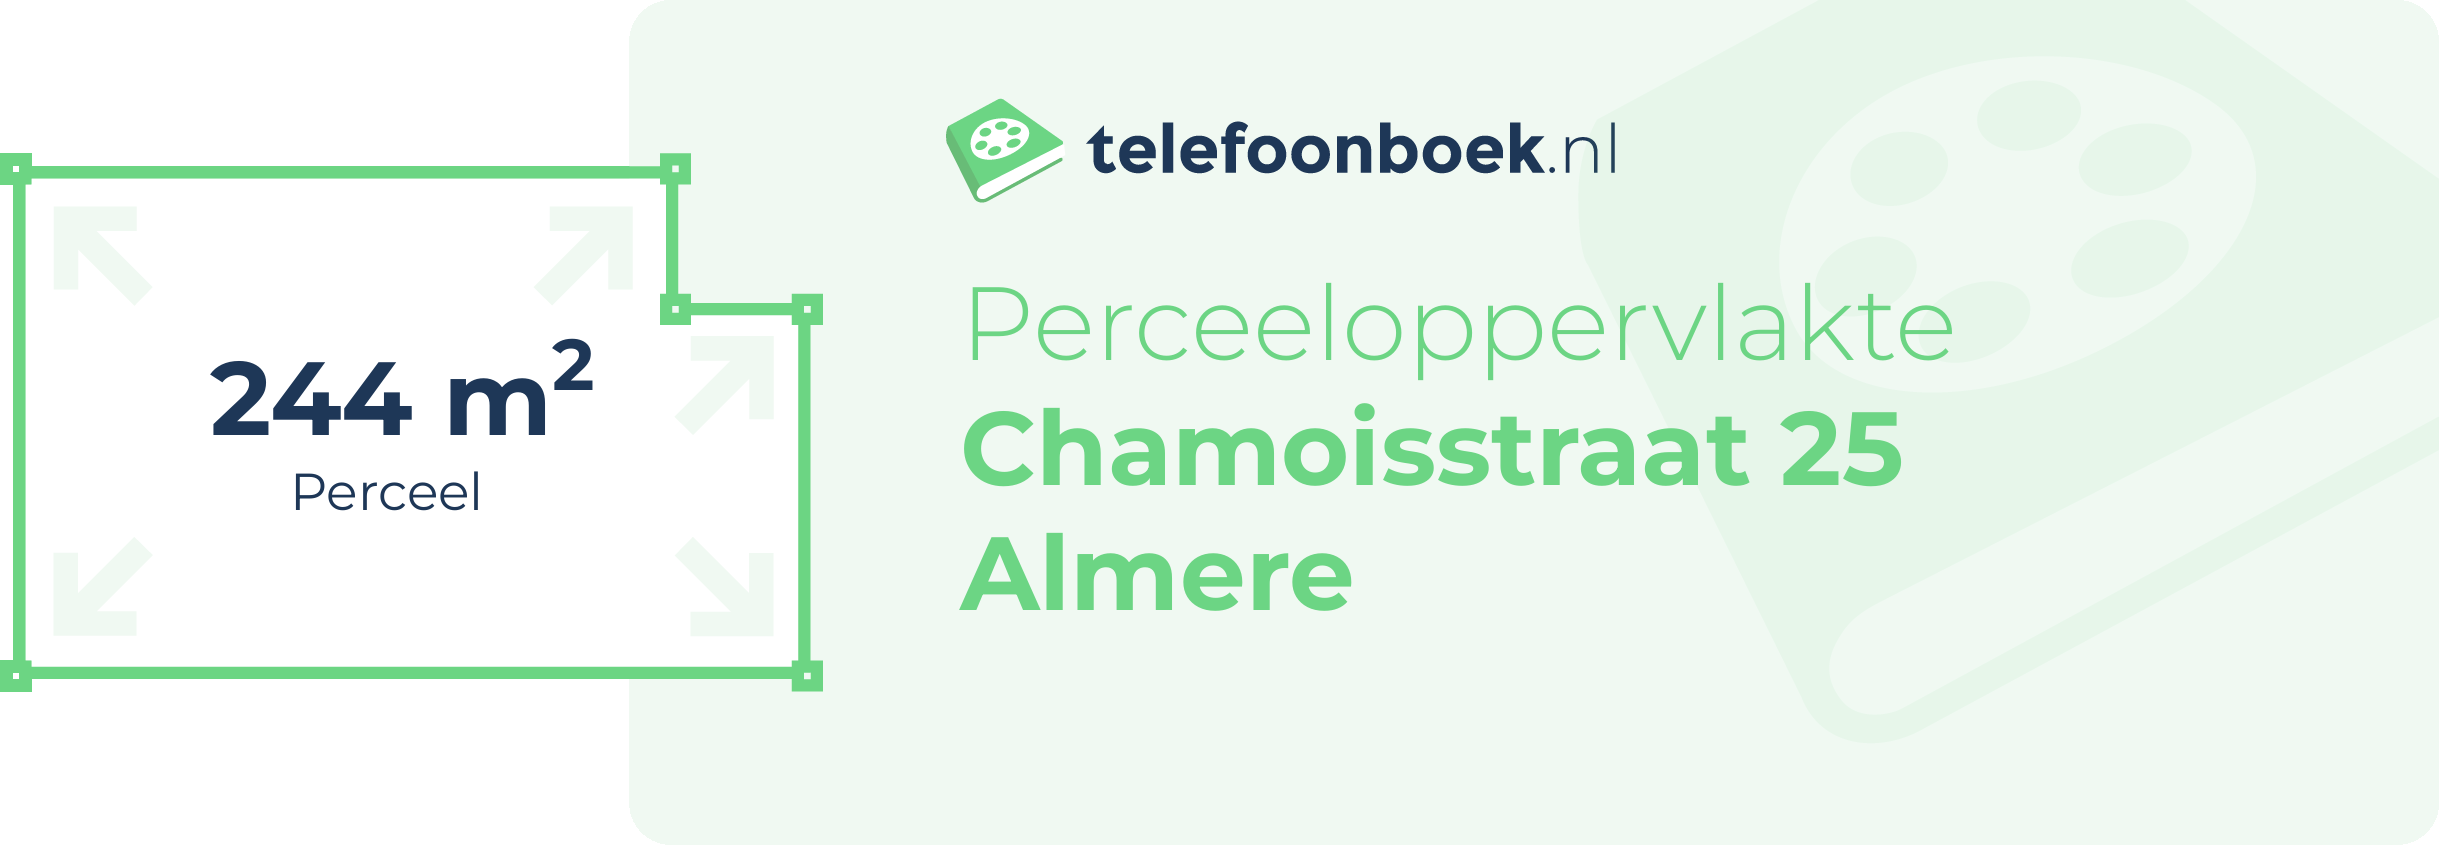 Perceeloppervlakte Chamoisstraat 25 Almere